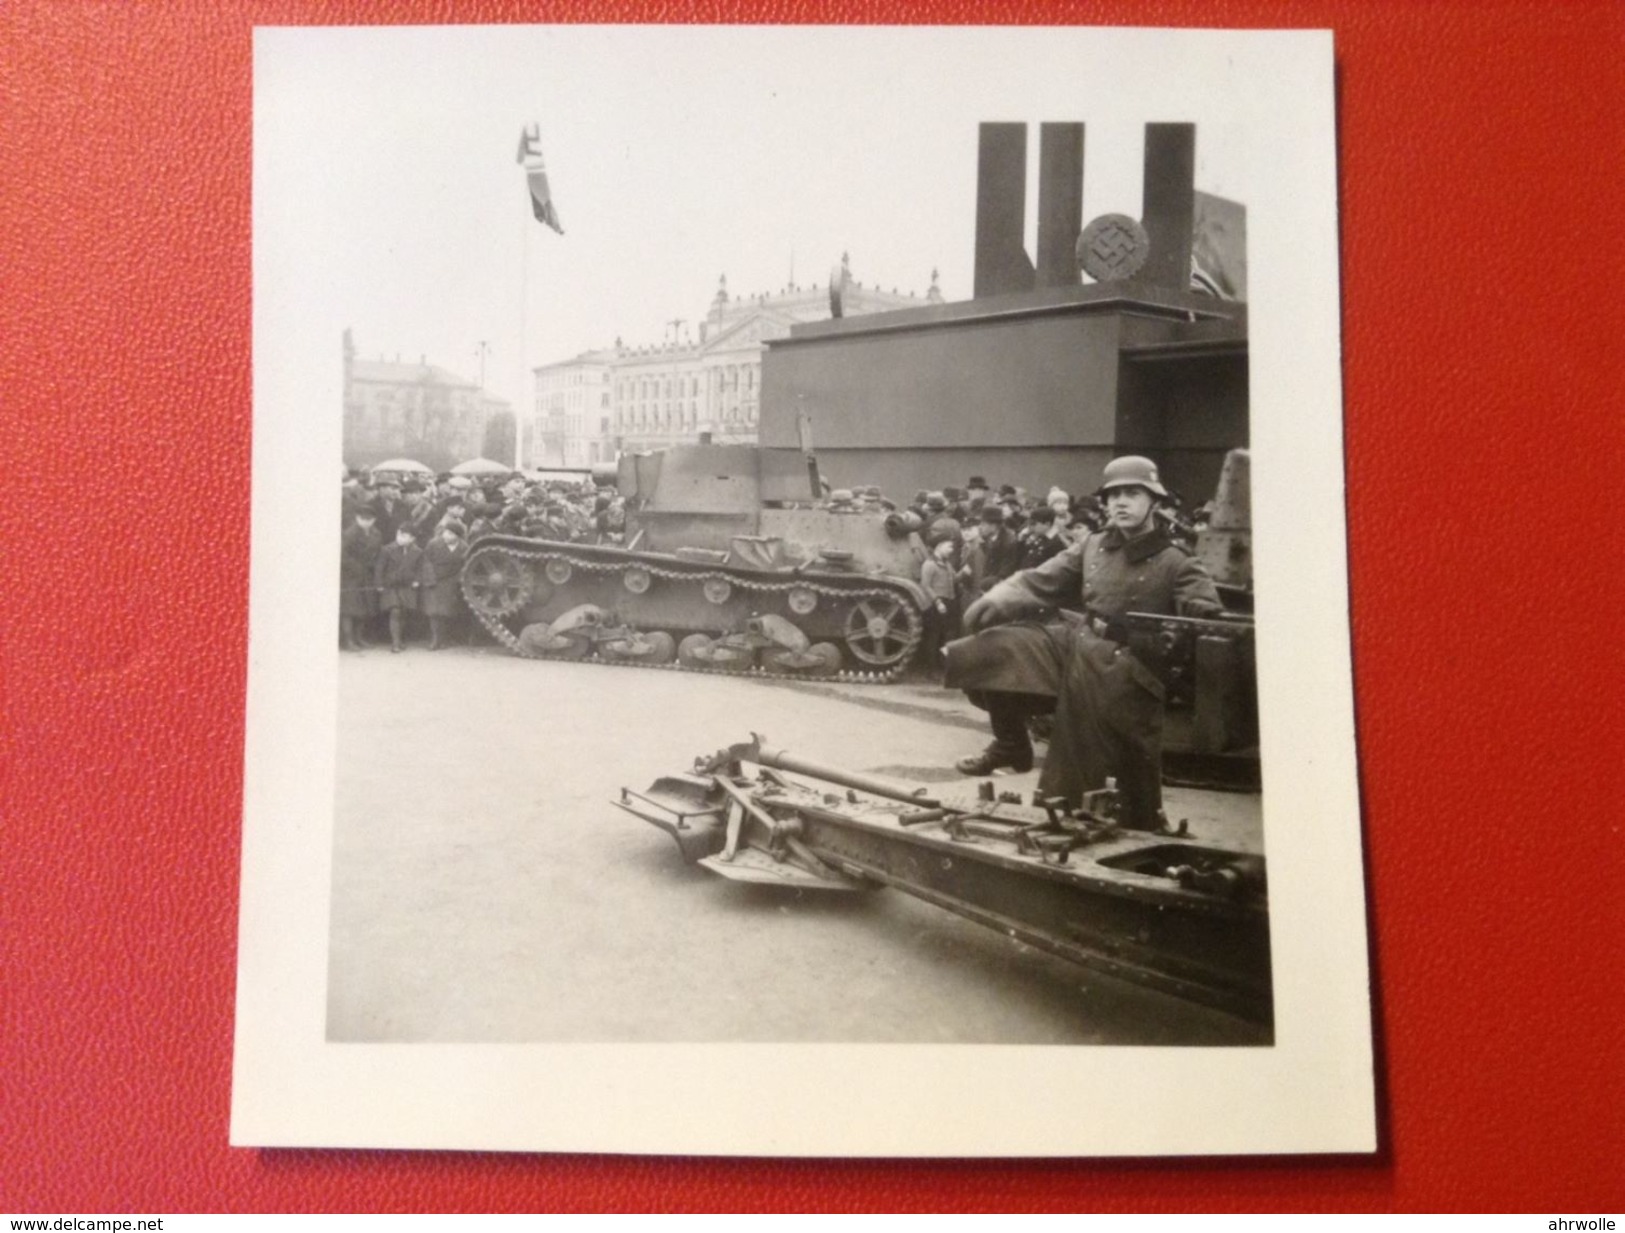 Foto WW2 Panzer Tank Berlin ? Auf Platz Mit Hakenkreuzfahnen Und Symbolen Und Soldat Stahlhelm Agfa Lupex Ca. 1940 - Krieg, Militär